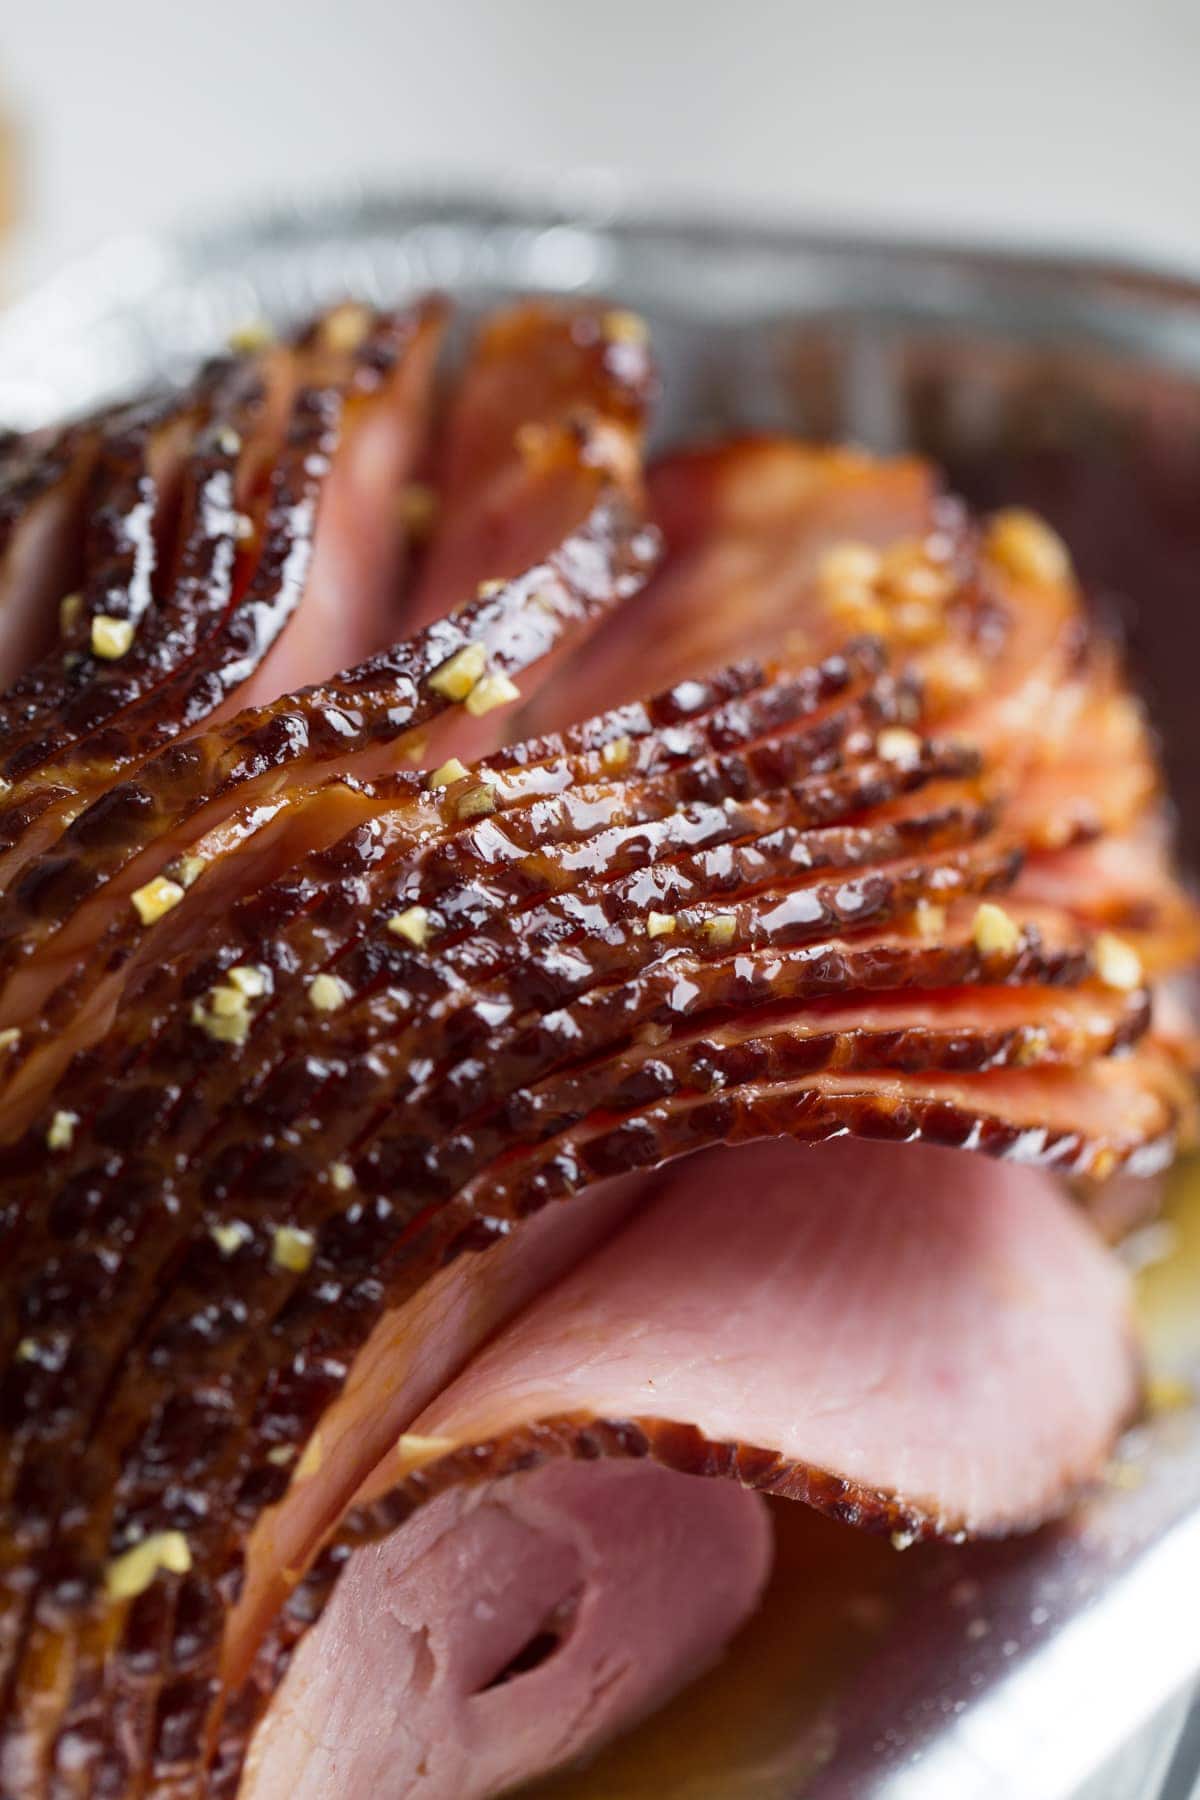 Amazing Baked Ham Recipe - Lauren's Latest